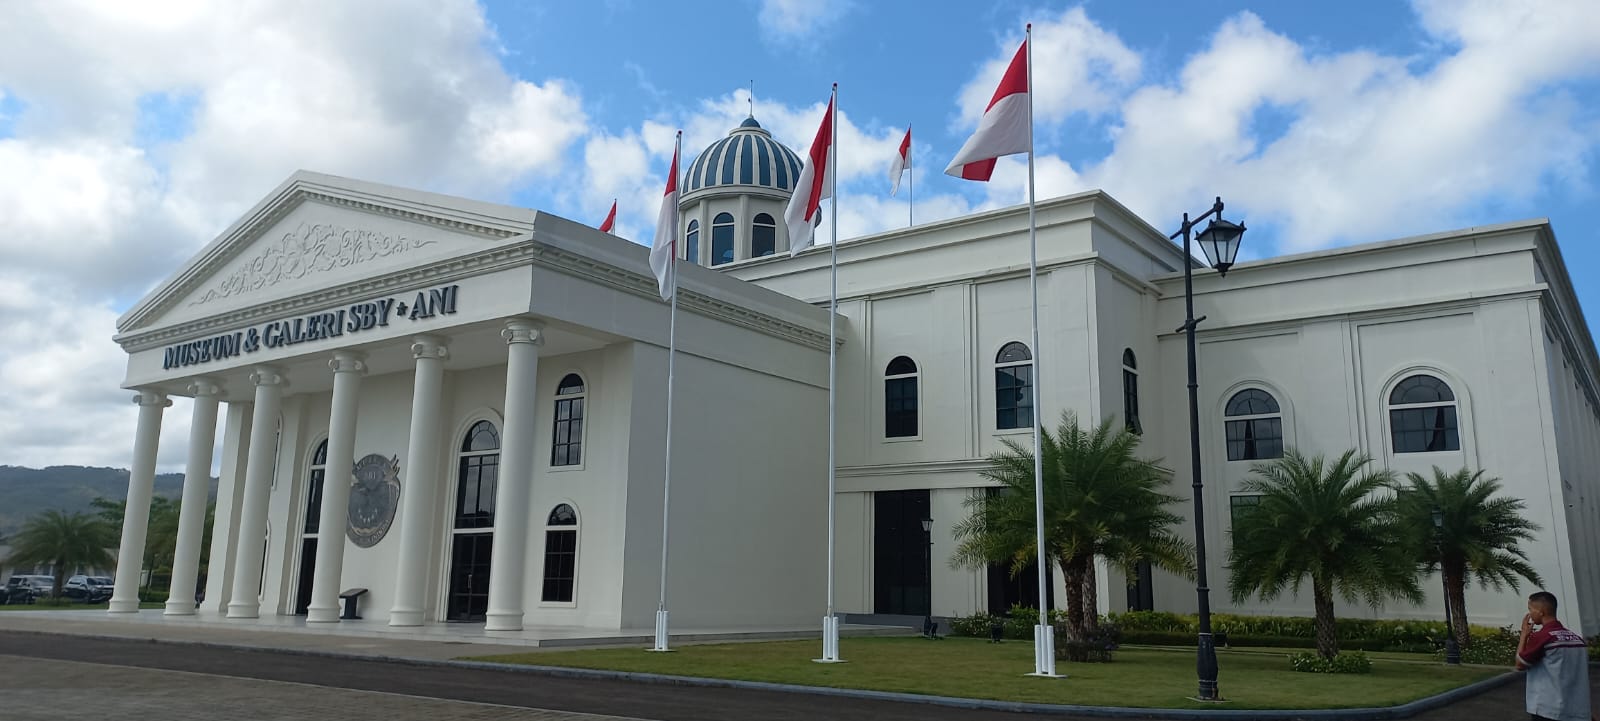 Museum dan galeri SBY - ANI yang megah di Pacitan, Jawa Timur. Foto ist.